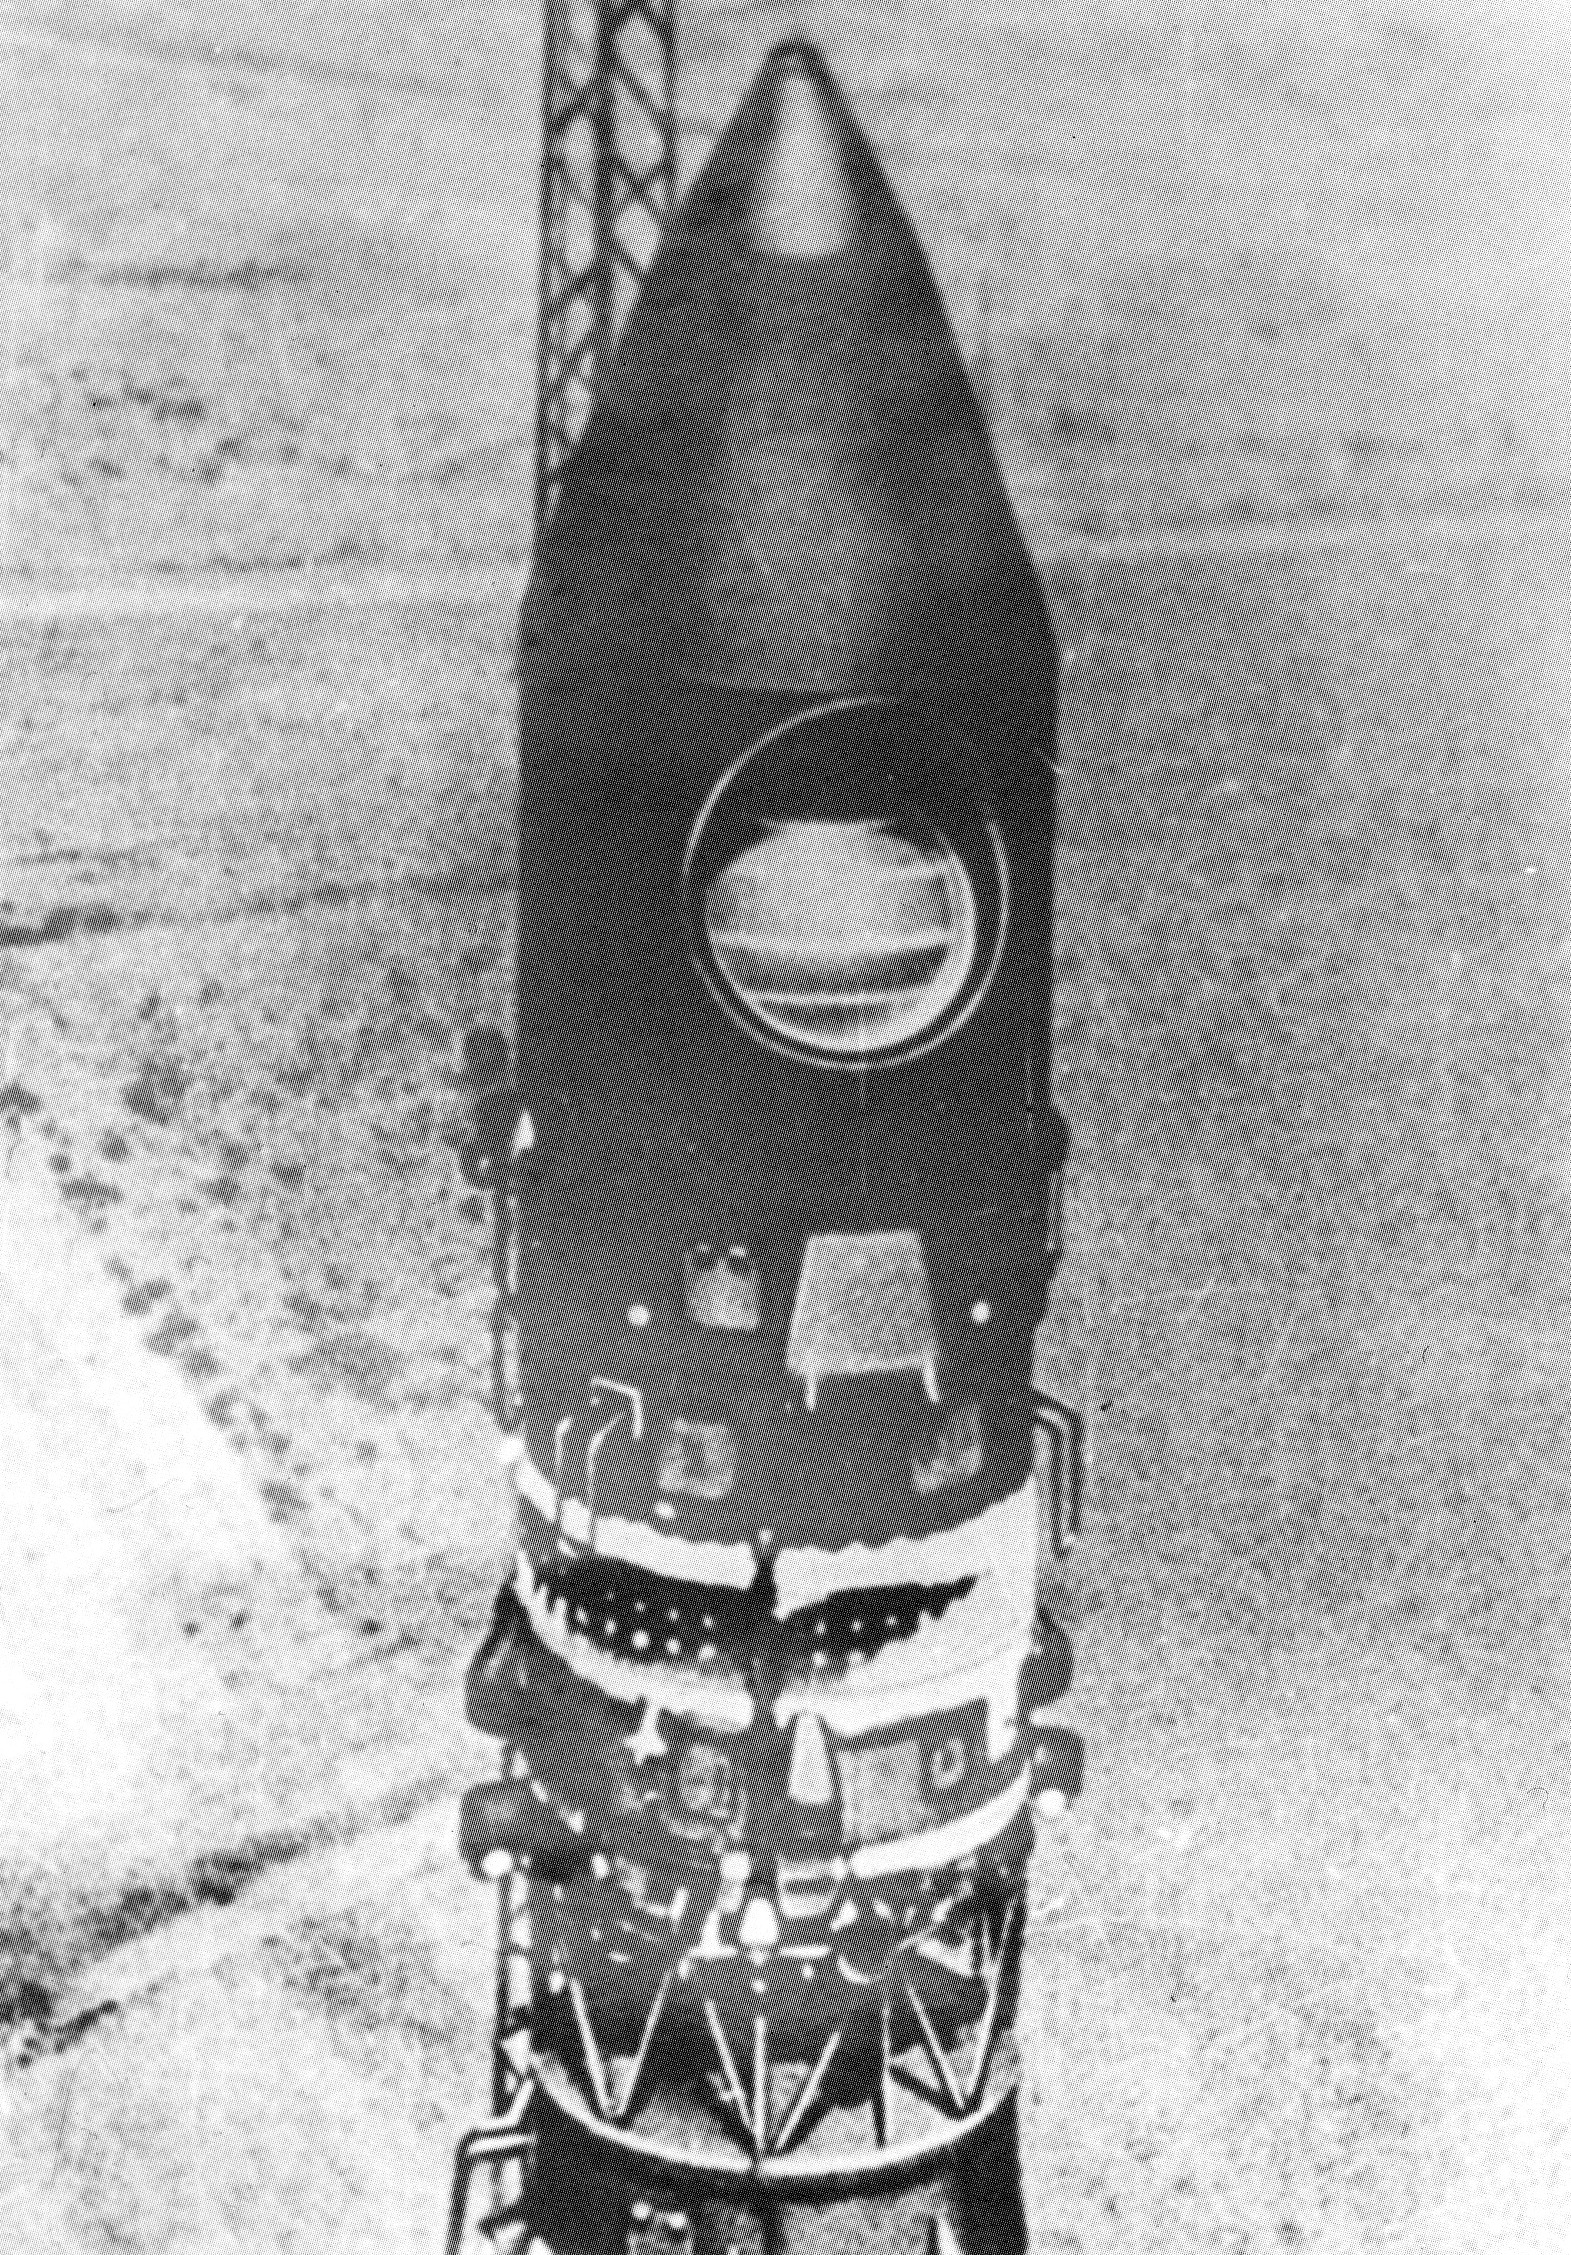 Год первого полета космического корабля восток. Космический корабль Восток 1 Юрия Гагарина. Восток 1 Гагарин 1961. Космический корабль Восток 1 Гагарина 1961. Ракета Юрия Гагарина Восток-1.